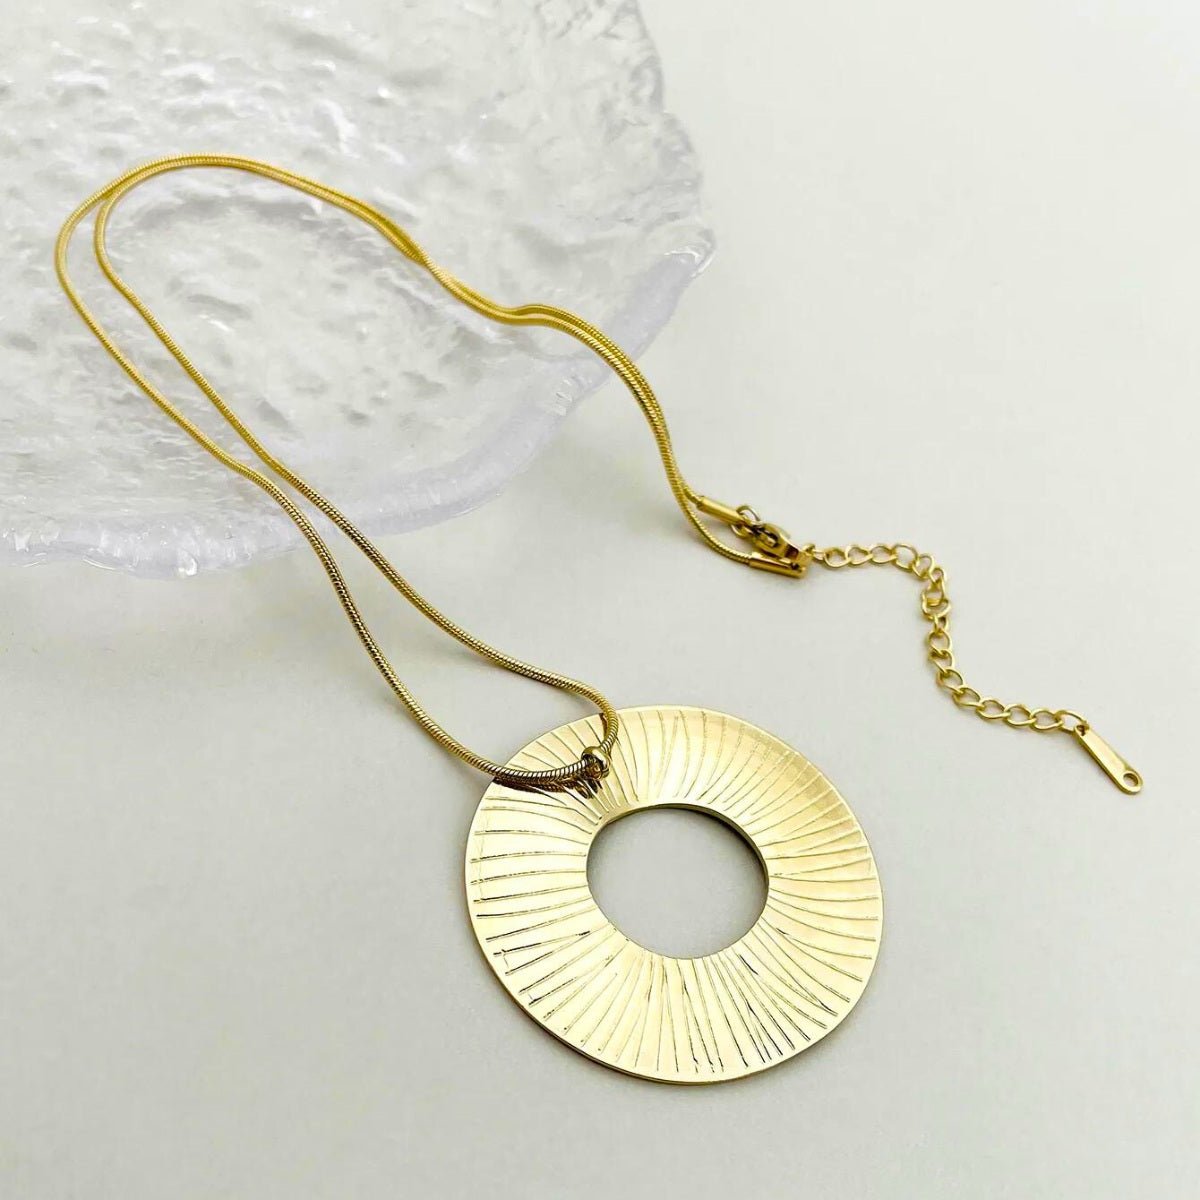 Γυναικείο κολιέ ατσάλινο μακρύ 50 + 6 εκατοστά με κυκλικό στοιχείο 4.5 εκατοστά επιχρυσωμένο (N1352) - necklace - charmy.gr